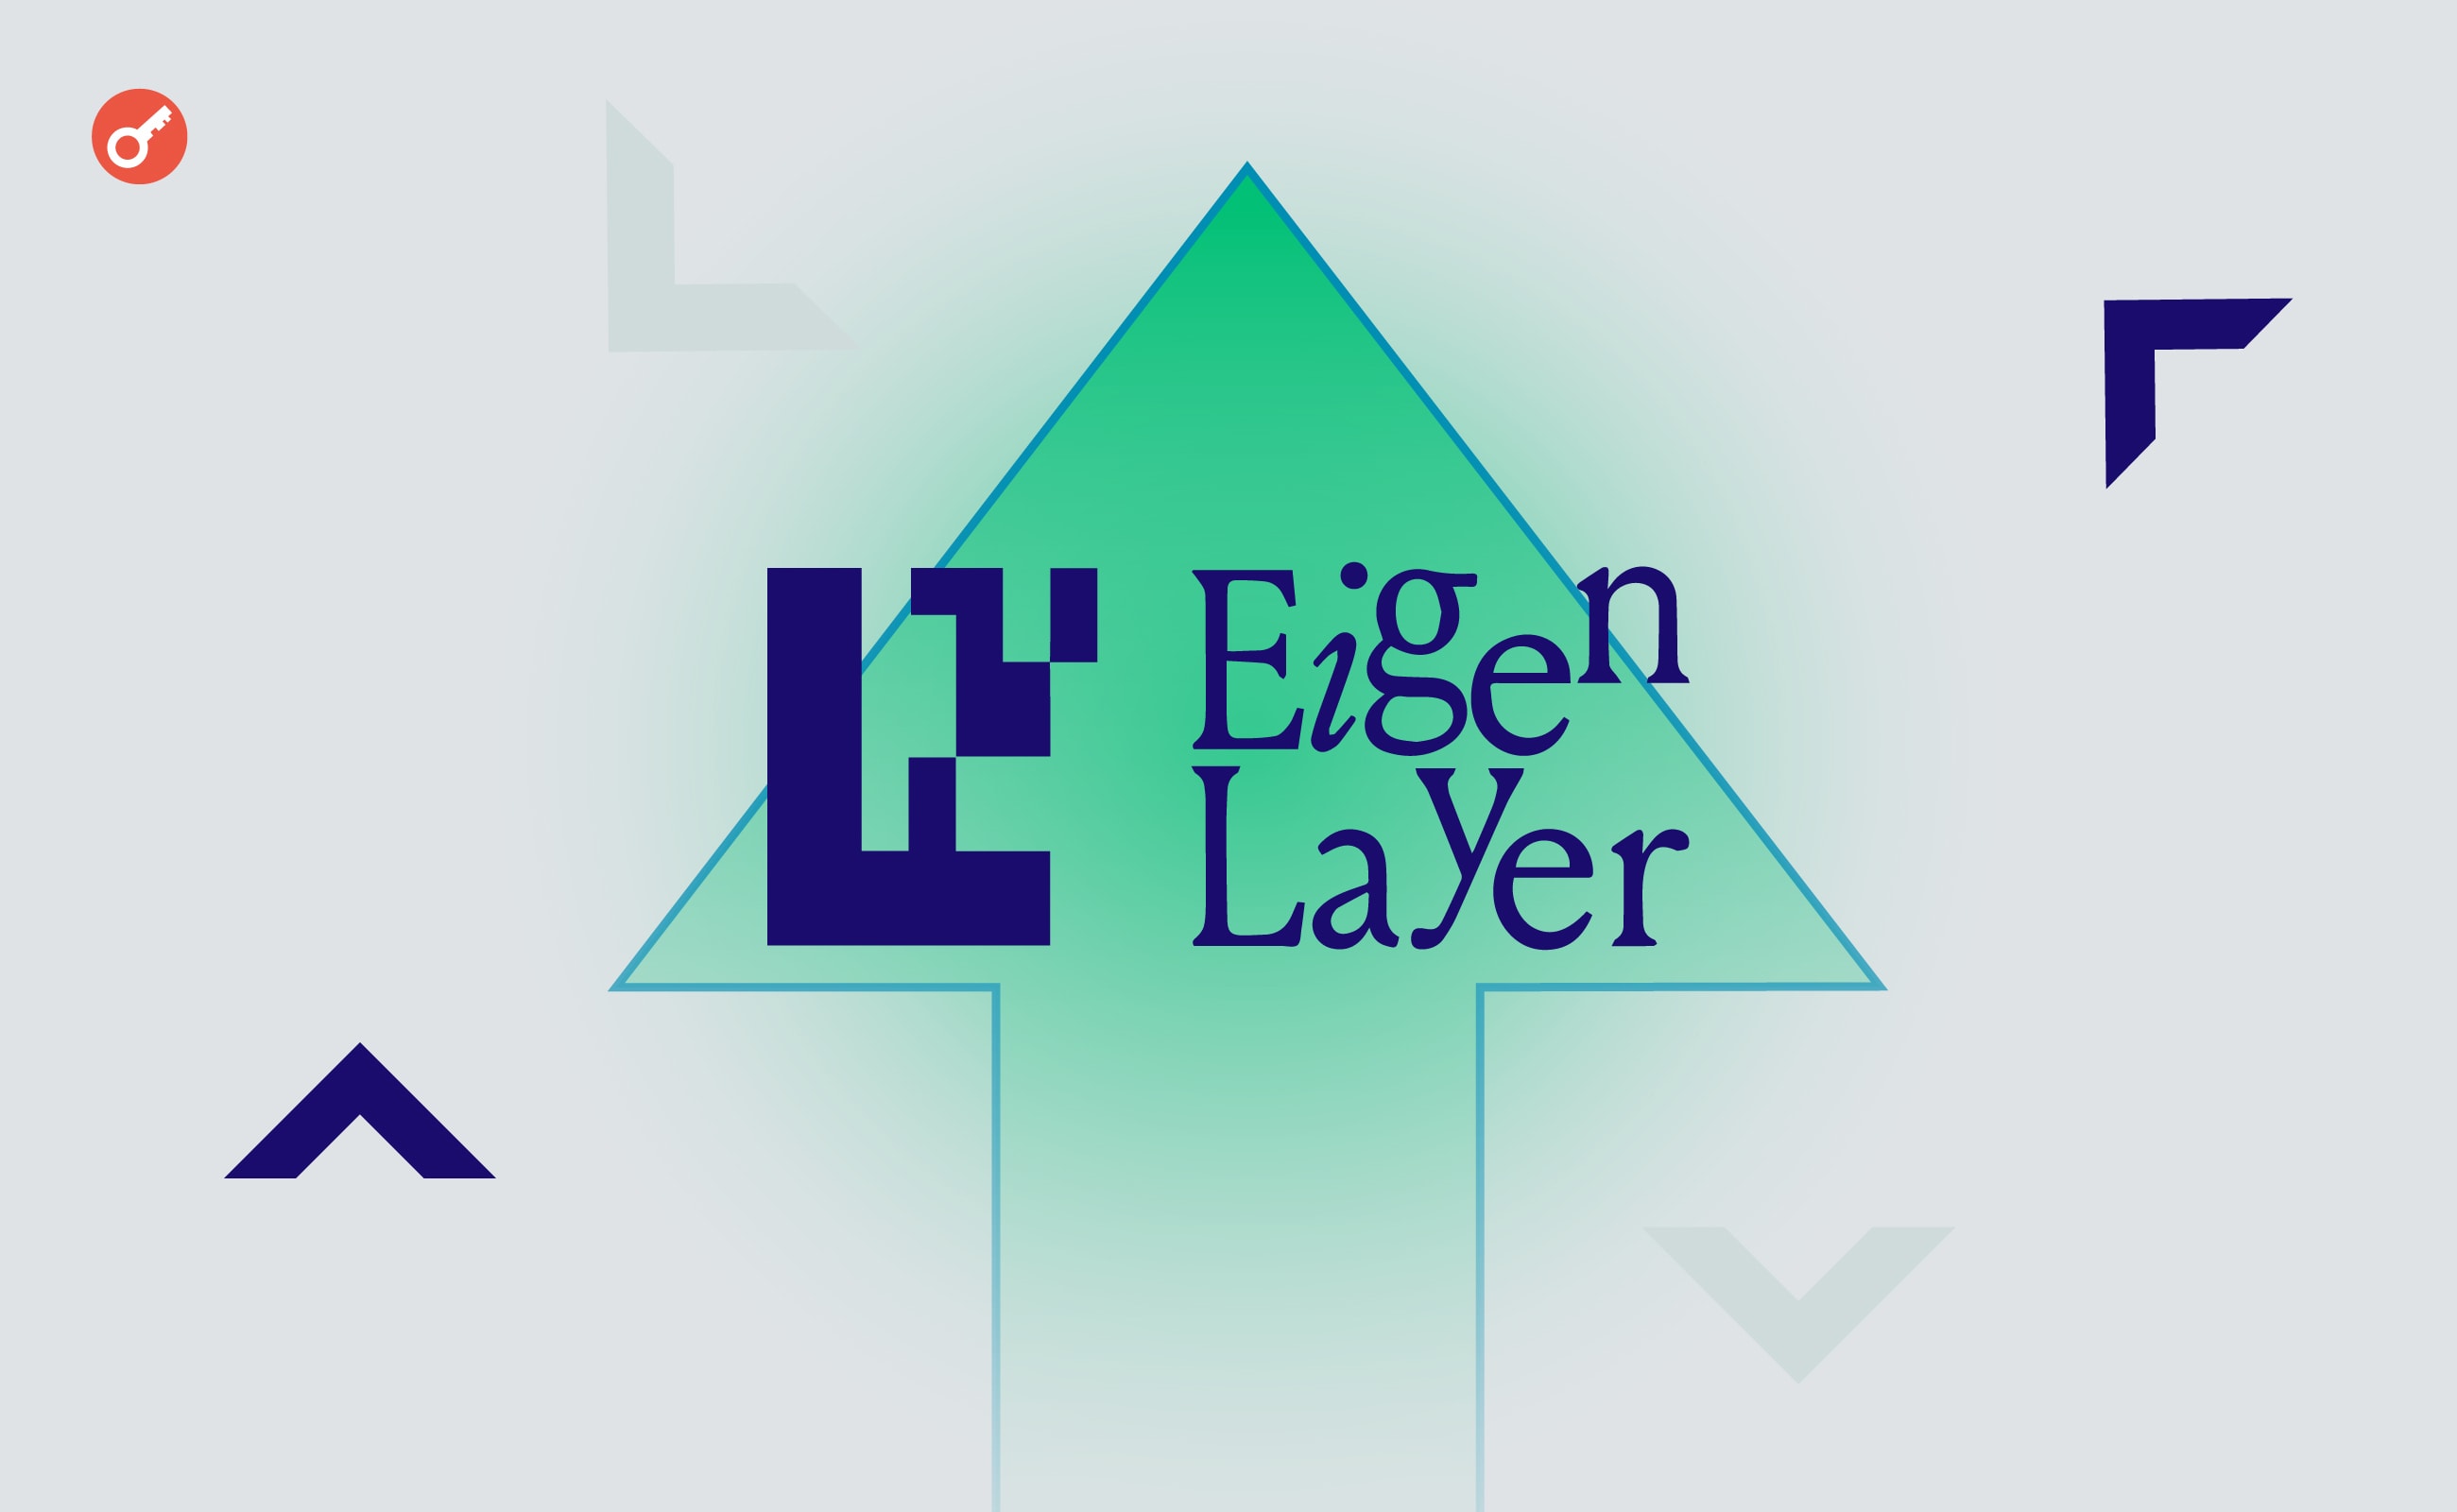 TVL протокола рестейкинга EigenLayer превысил $15,1 млрд. Заглавный коллаж новости.